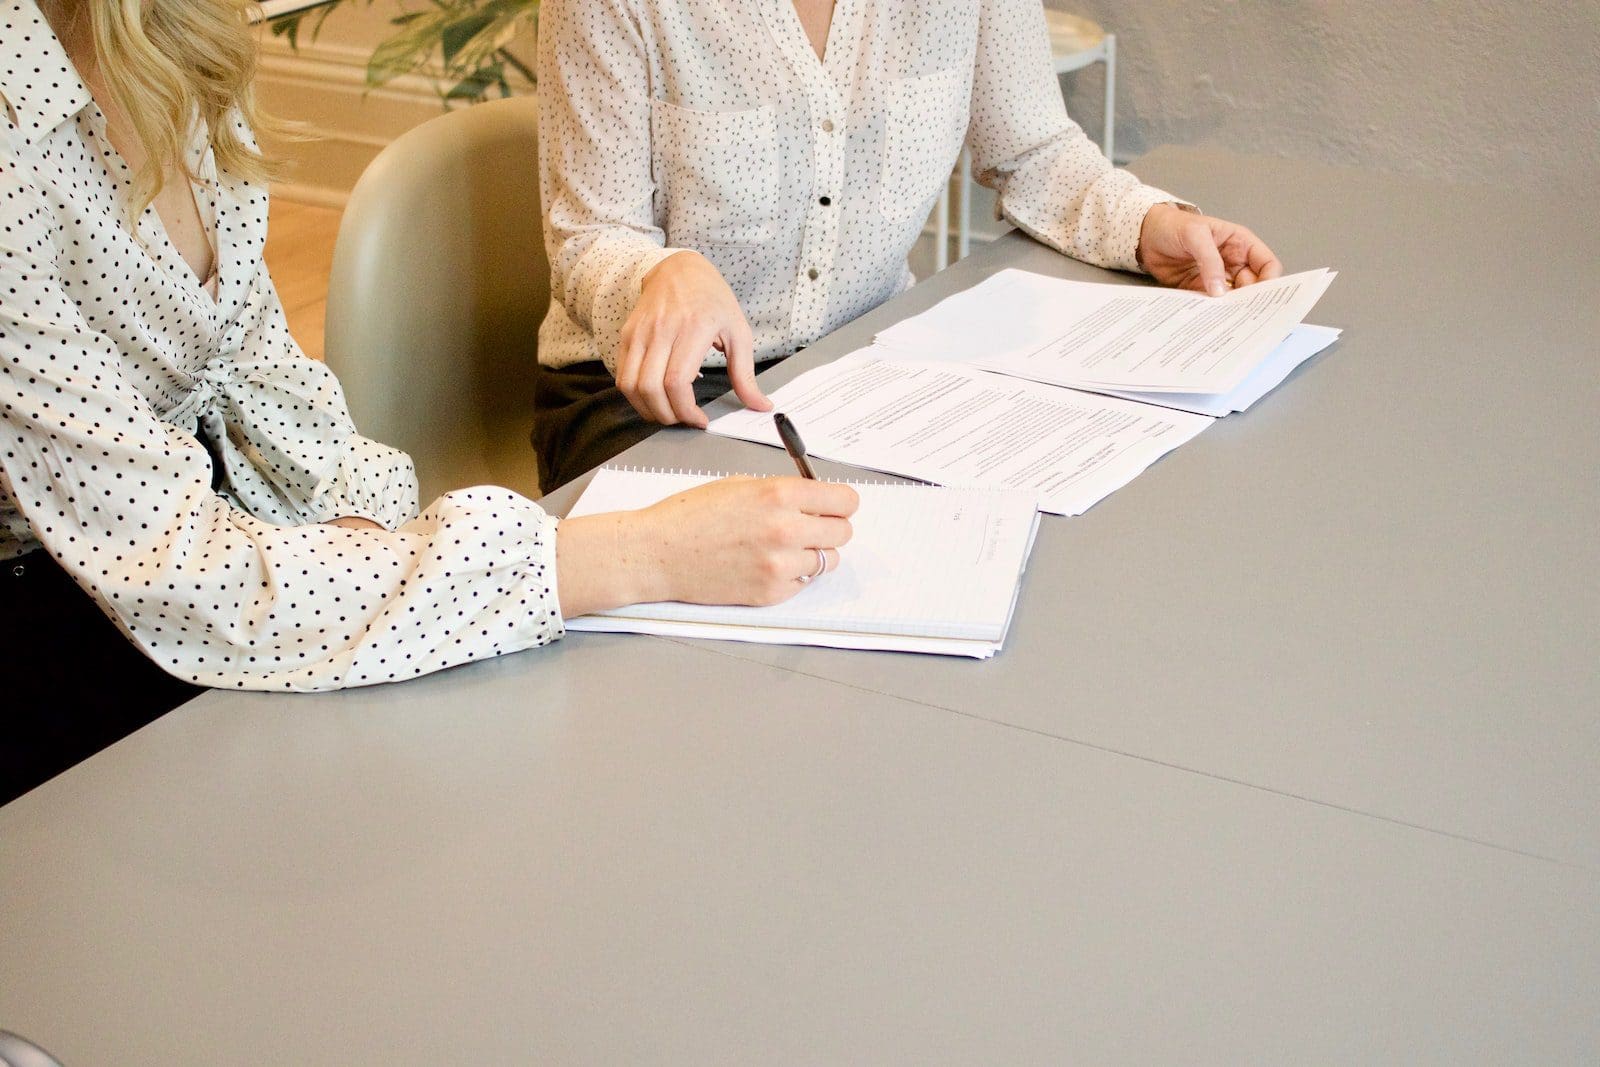 người phụ nữ ký trên giấy in màu trắng bên cạnh người phụ nữ sắp chạm vào tài liệu